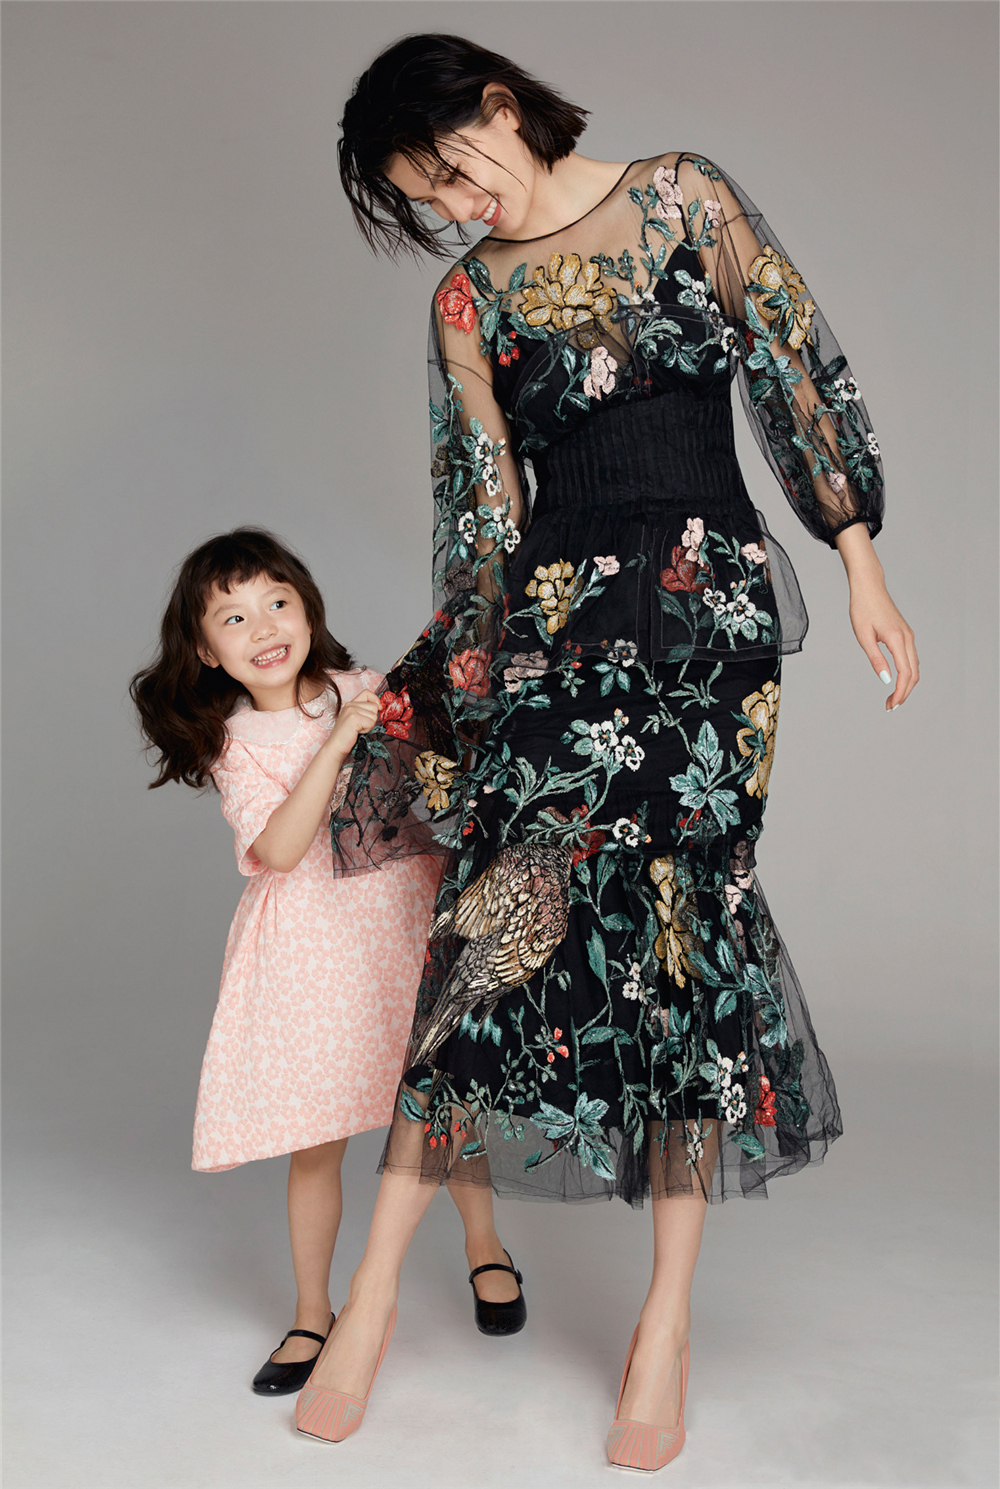 原创超模李丹妮携女儿登封面,田多多造型换不停,才五岁半就有大长腿